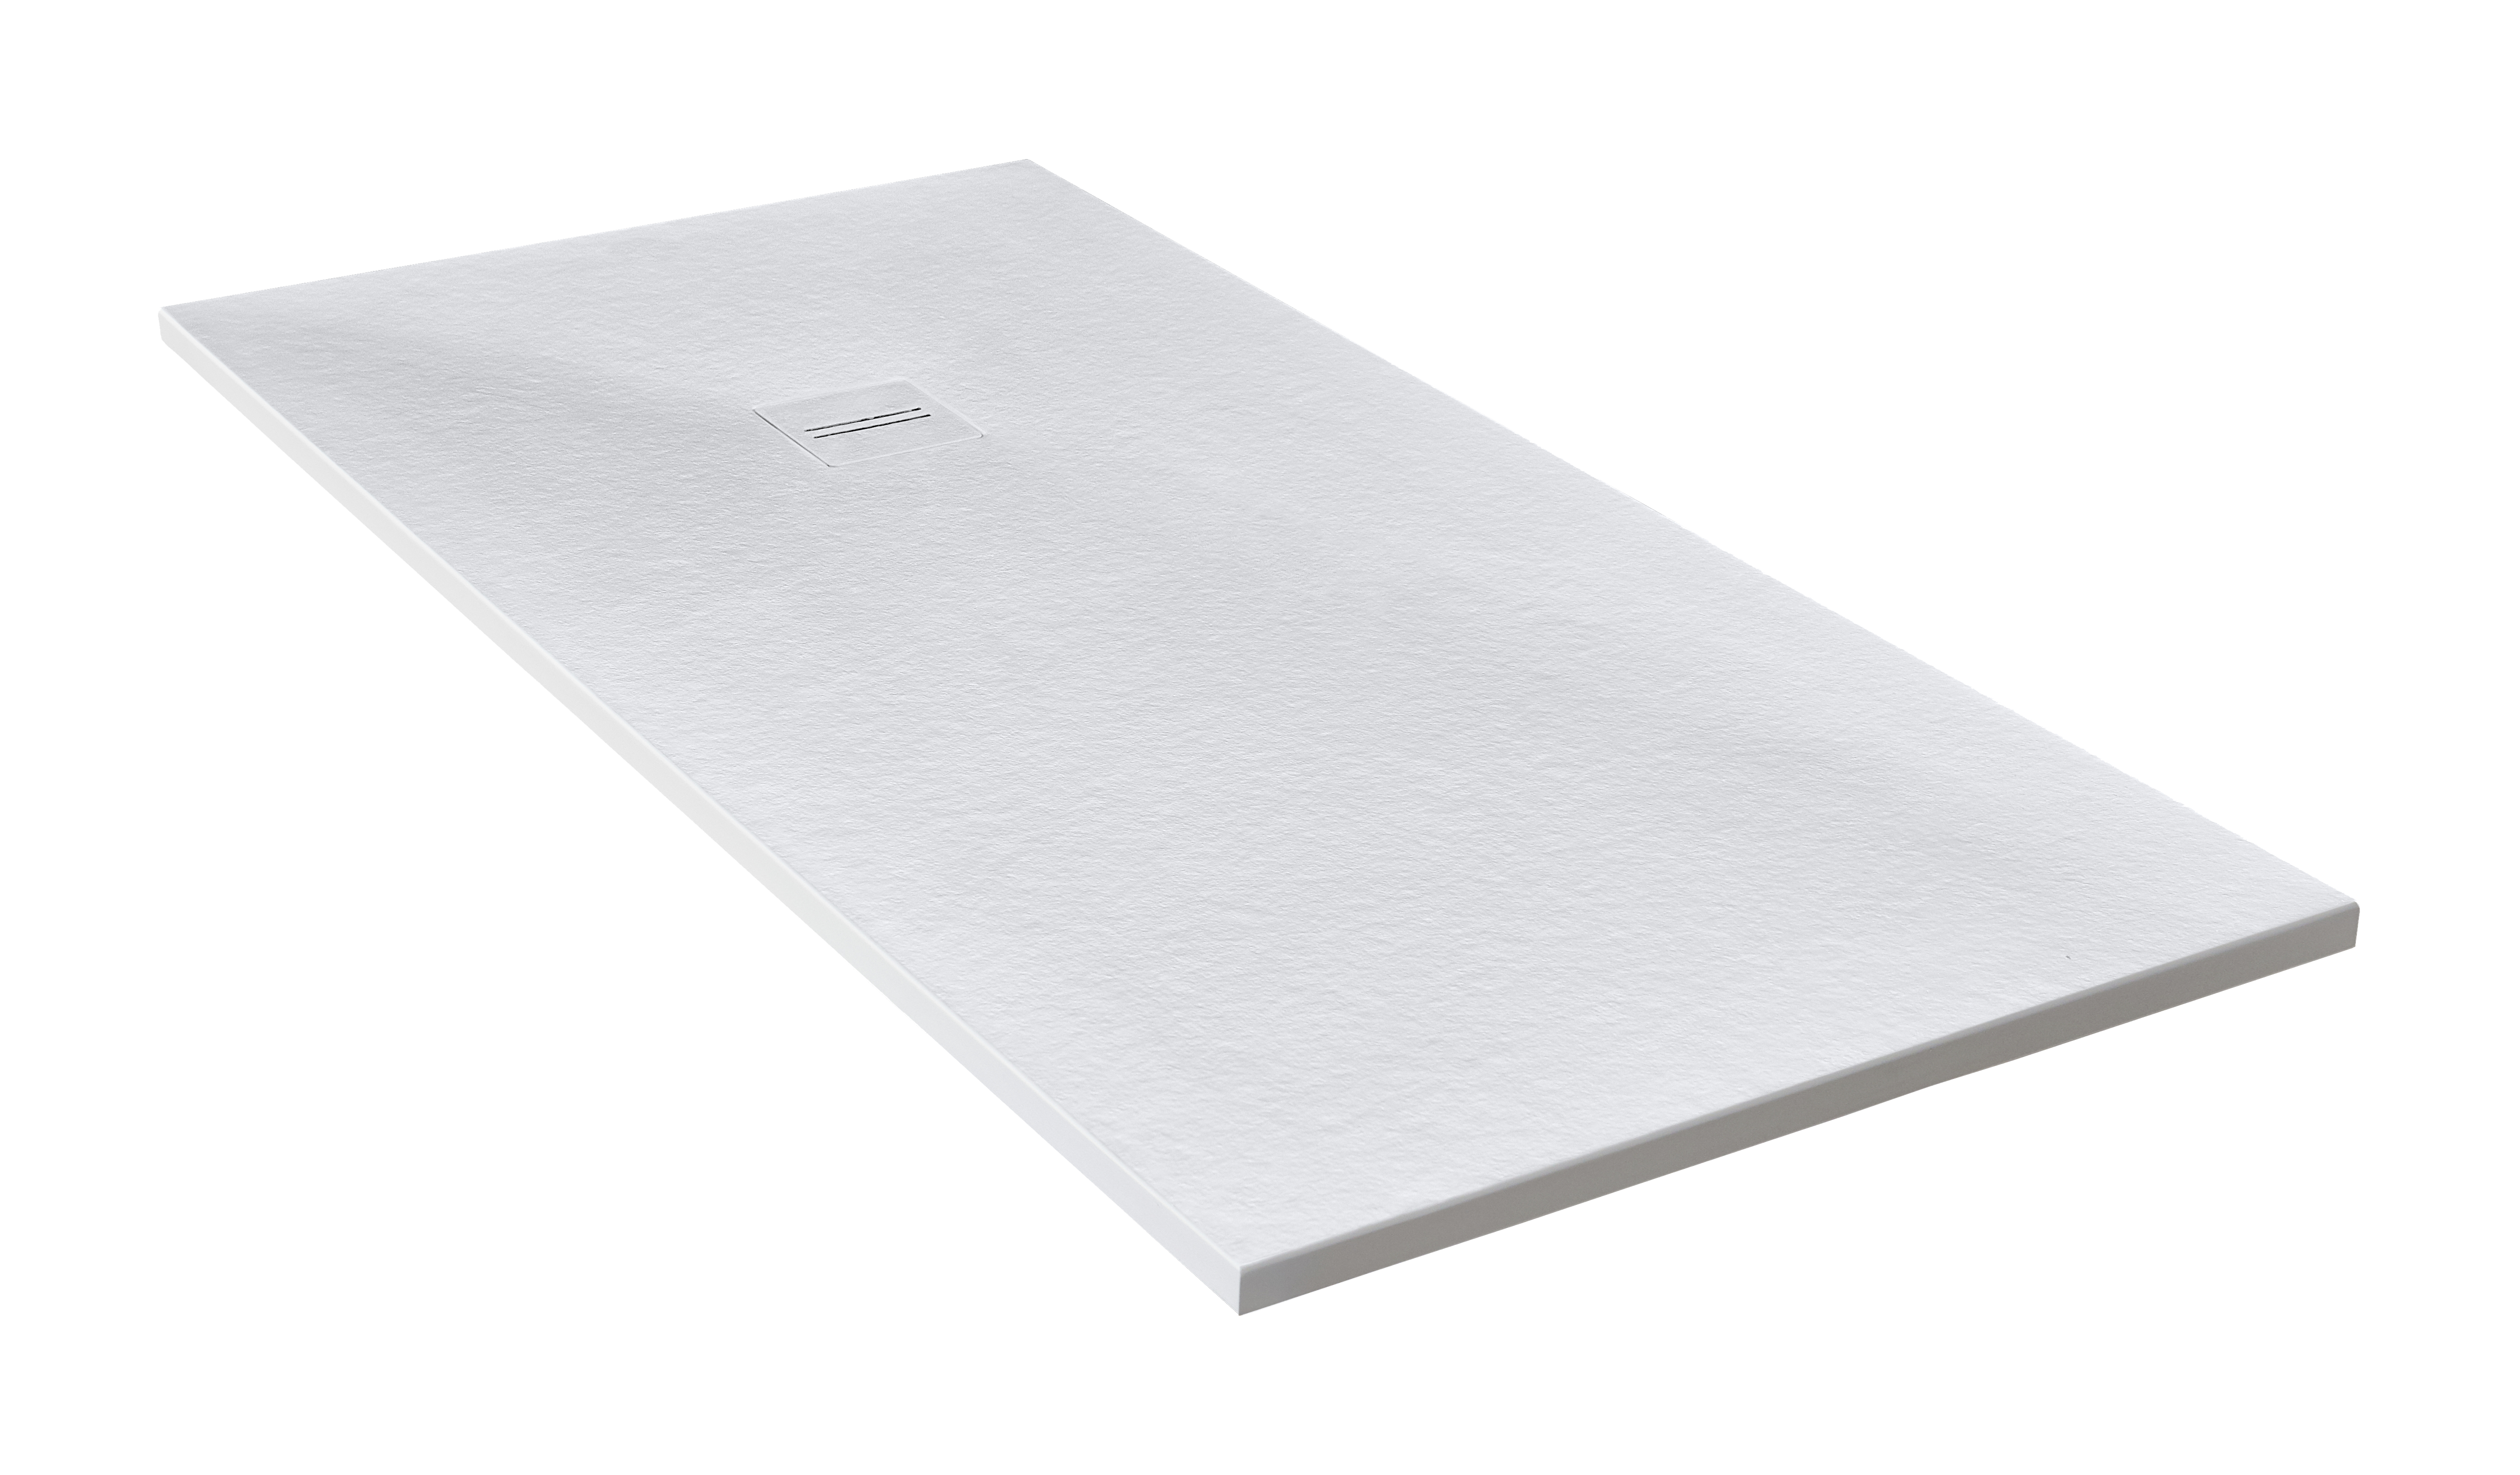 Plato de ducha cosmos 140x70 cm blanco